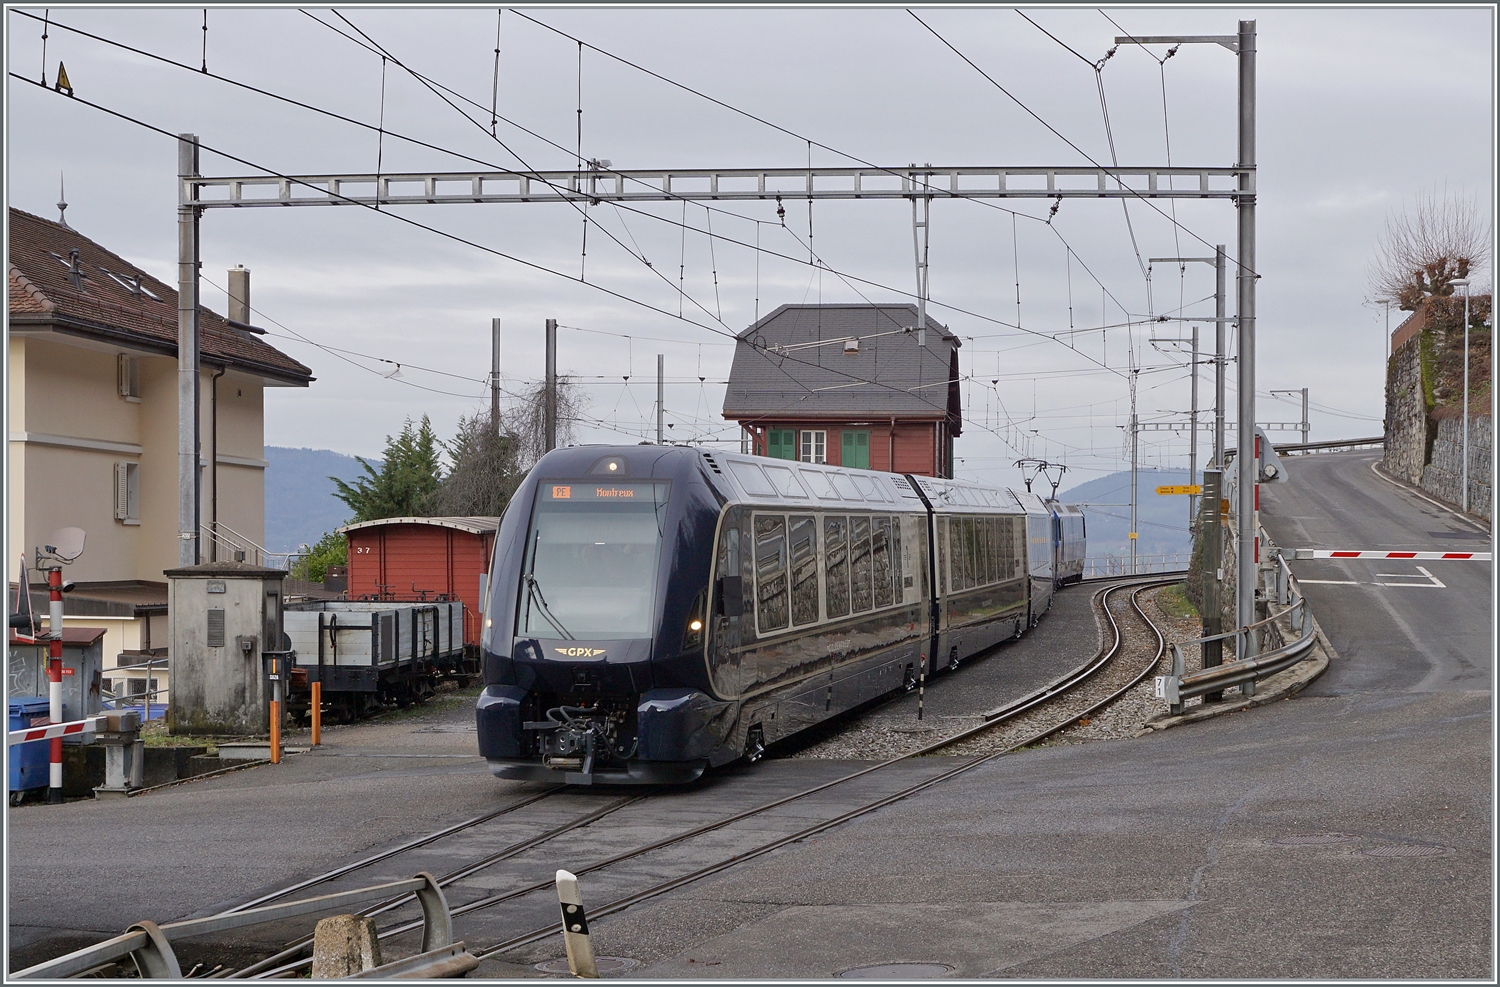 Während links im Bild der CEV Gk 37 und ein offener Güterwagen zu sehen sind, verlässt der MOB GoldenPass Express 4065 von Interlaken Ost nach Montreux den schmucken Bahnhof von Chamby, wo kurz auf einen Gegenzug zu warten war.

4. Januar 2023